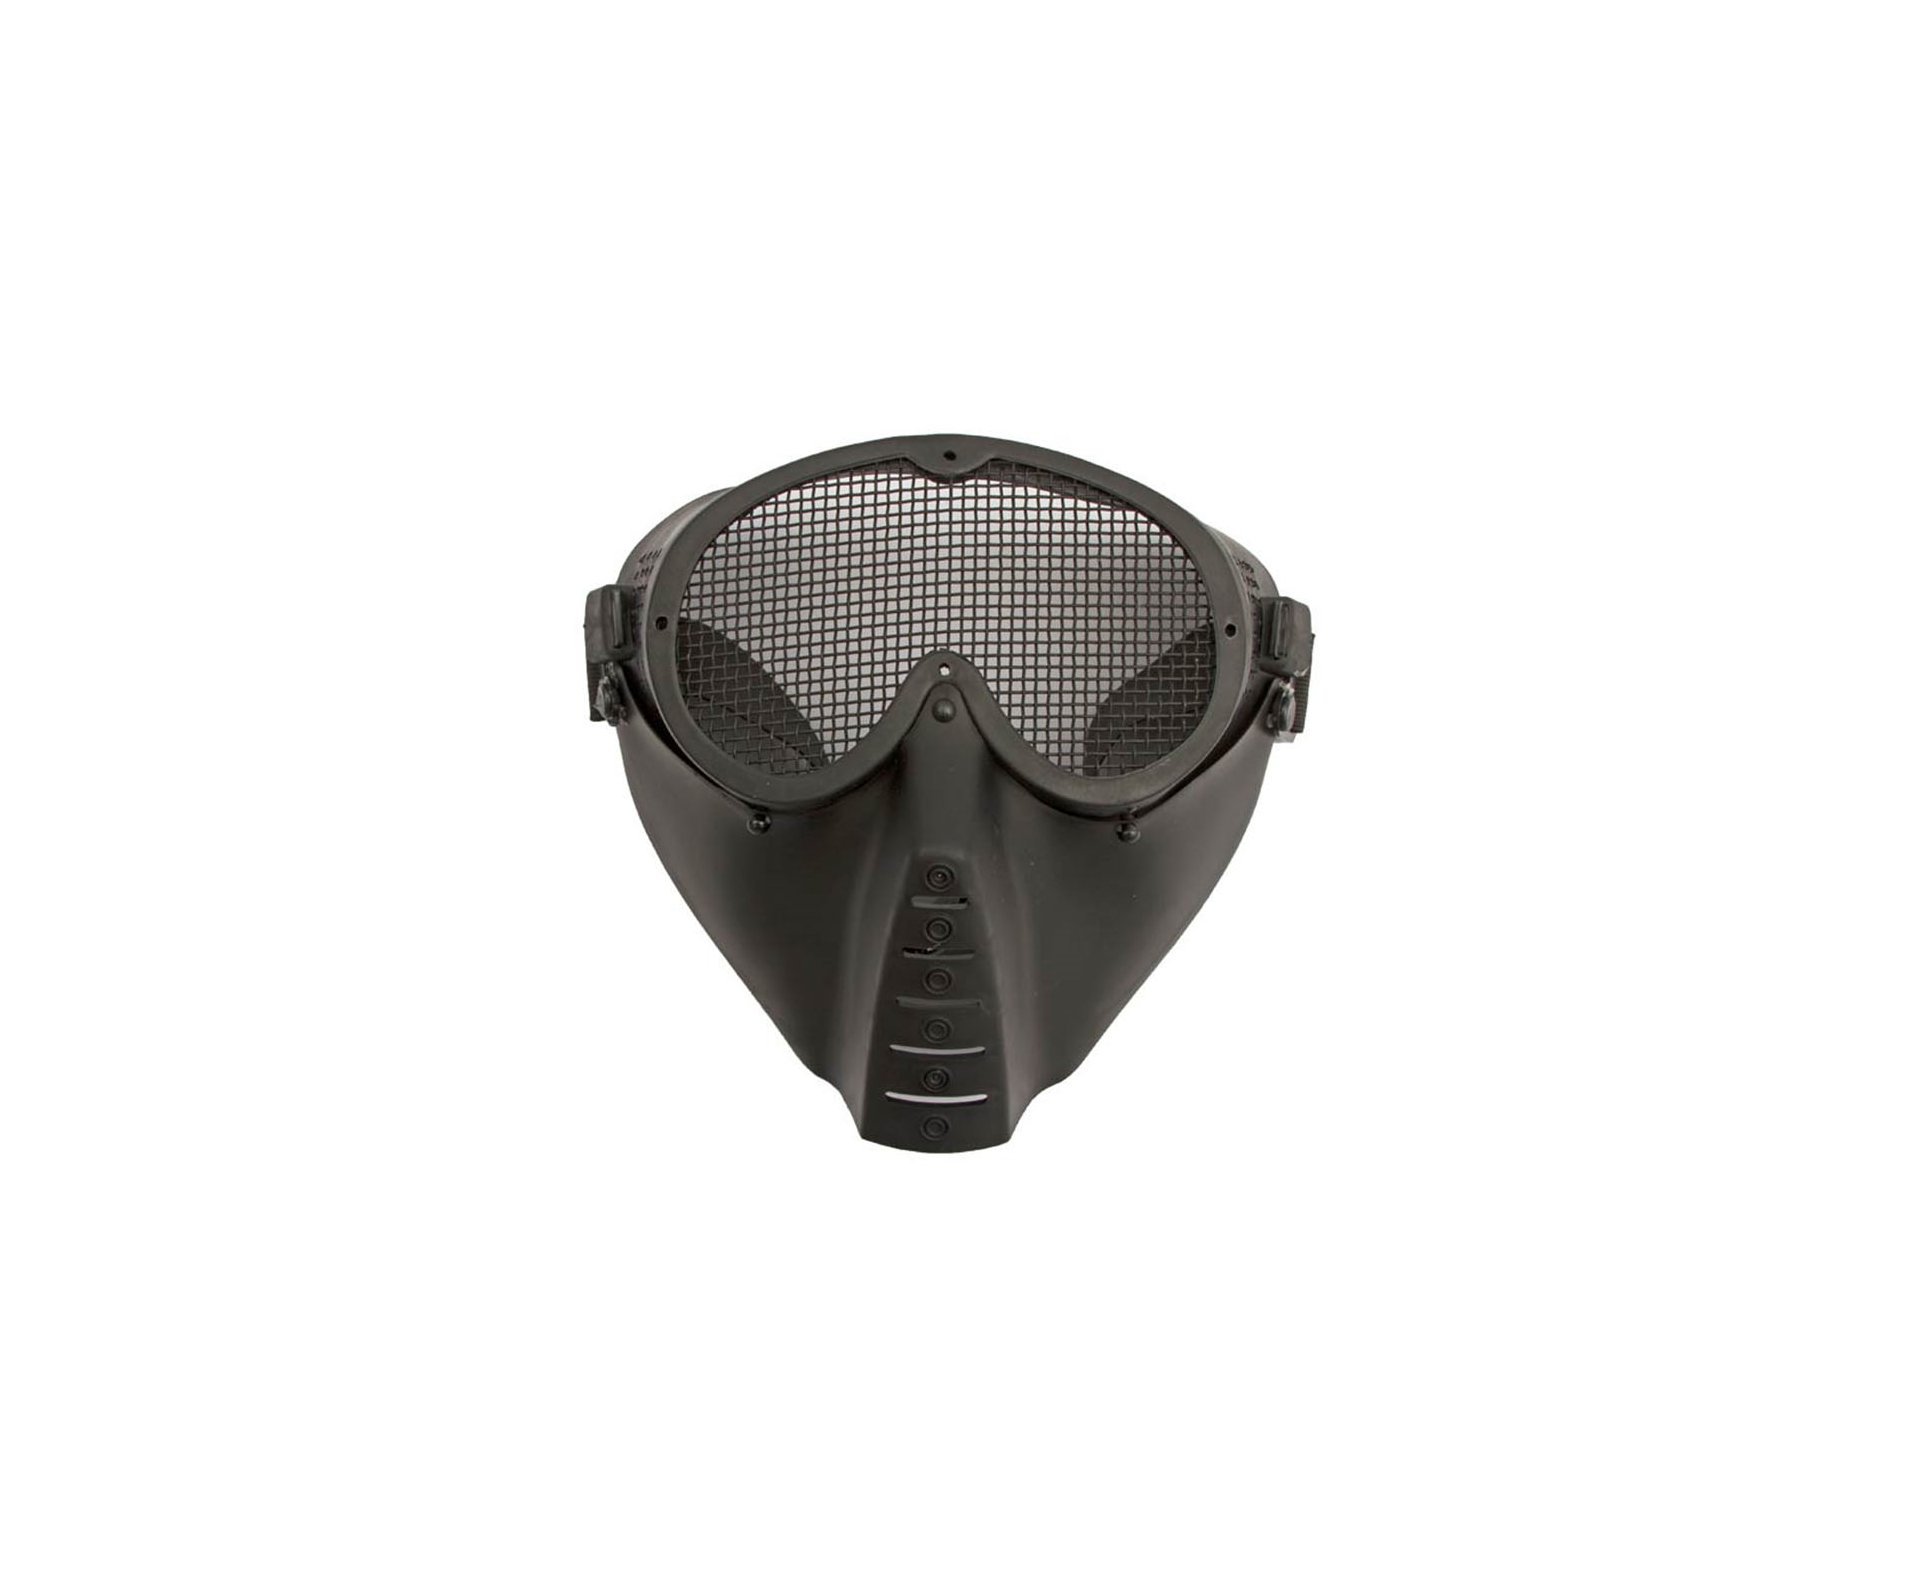 Mascara Tatica C/proteção De Tela De Metal - Preta